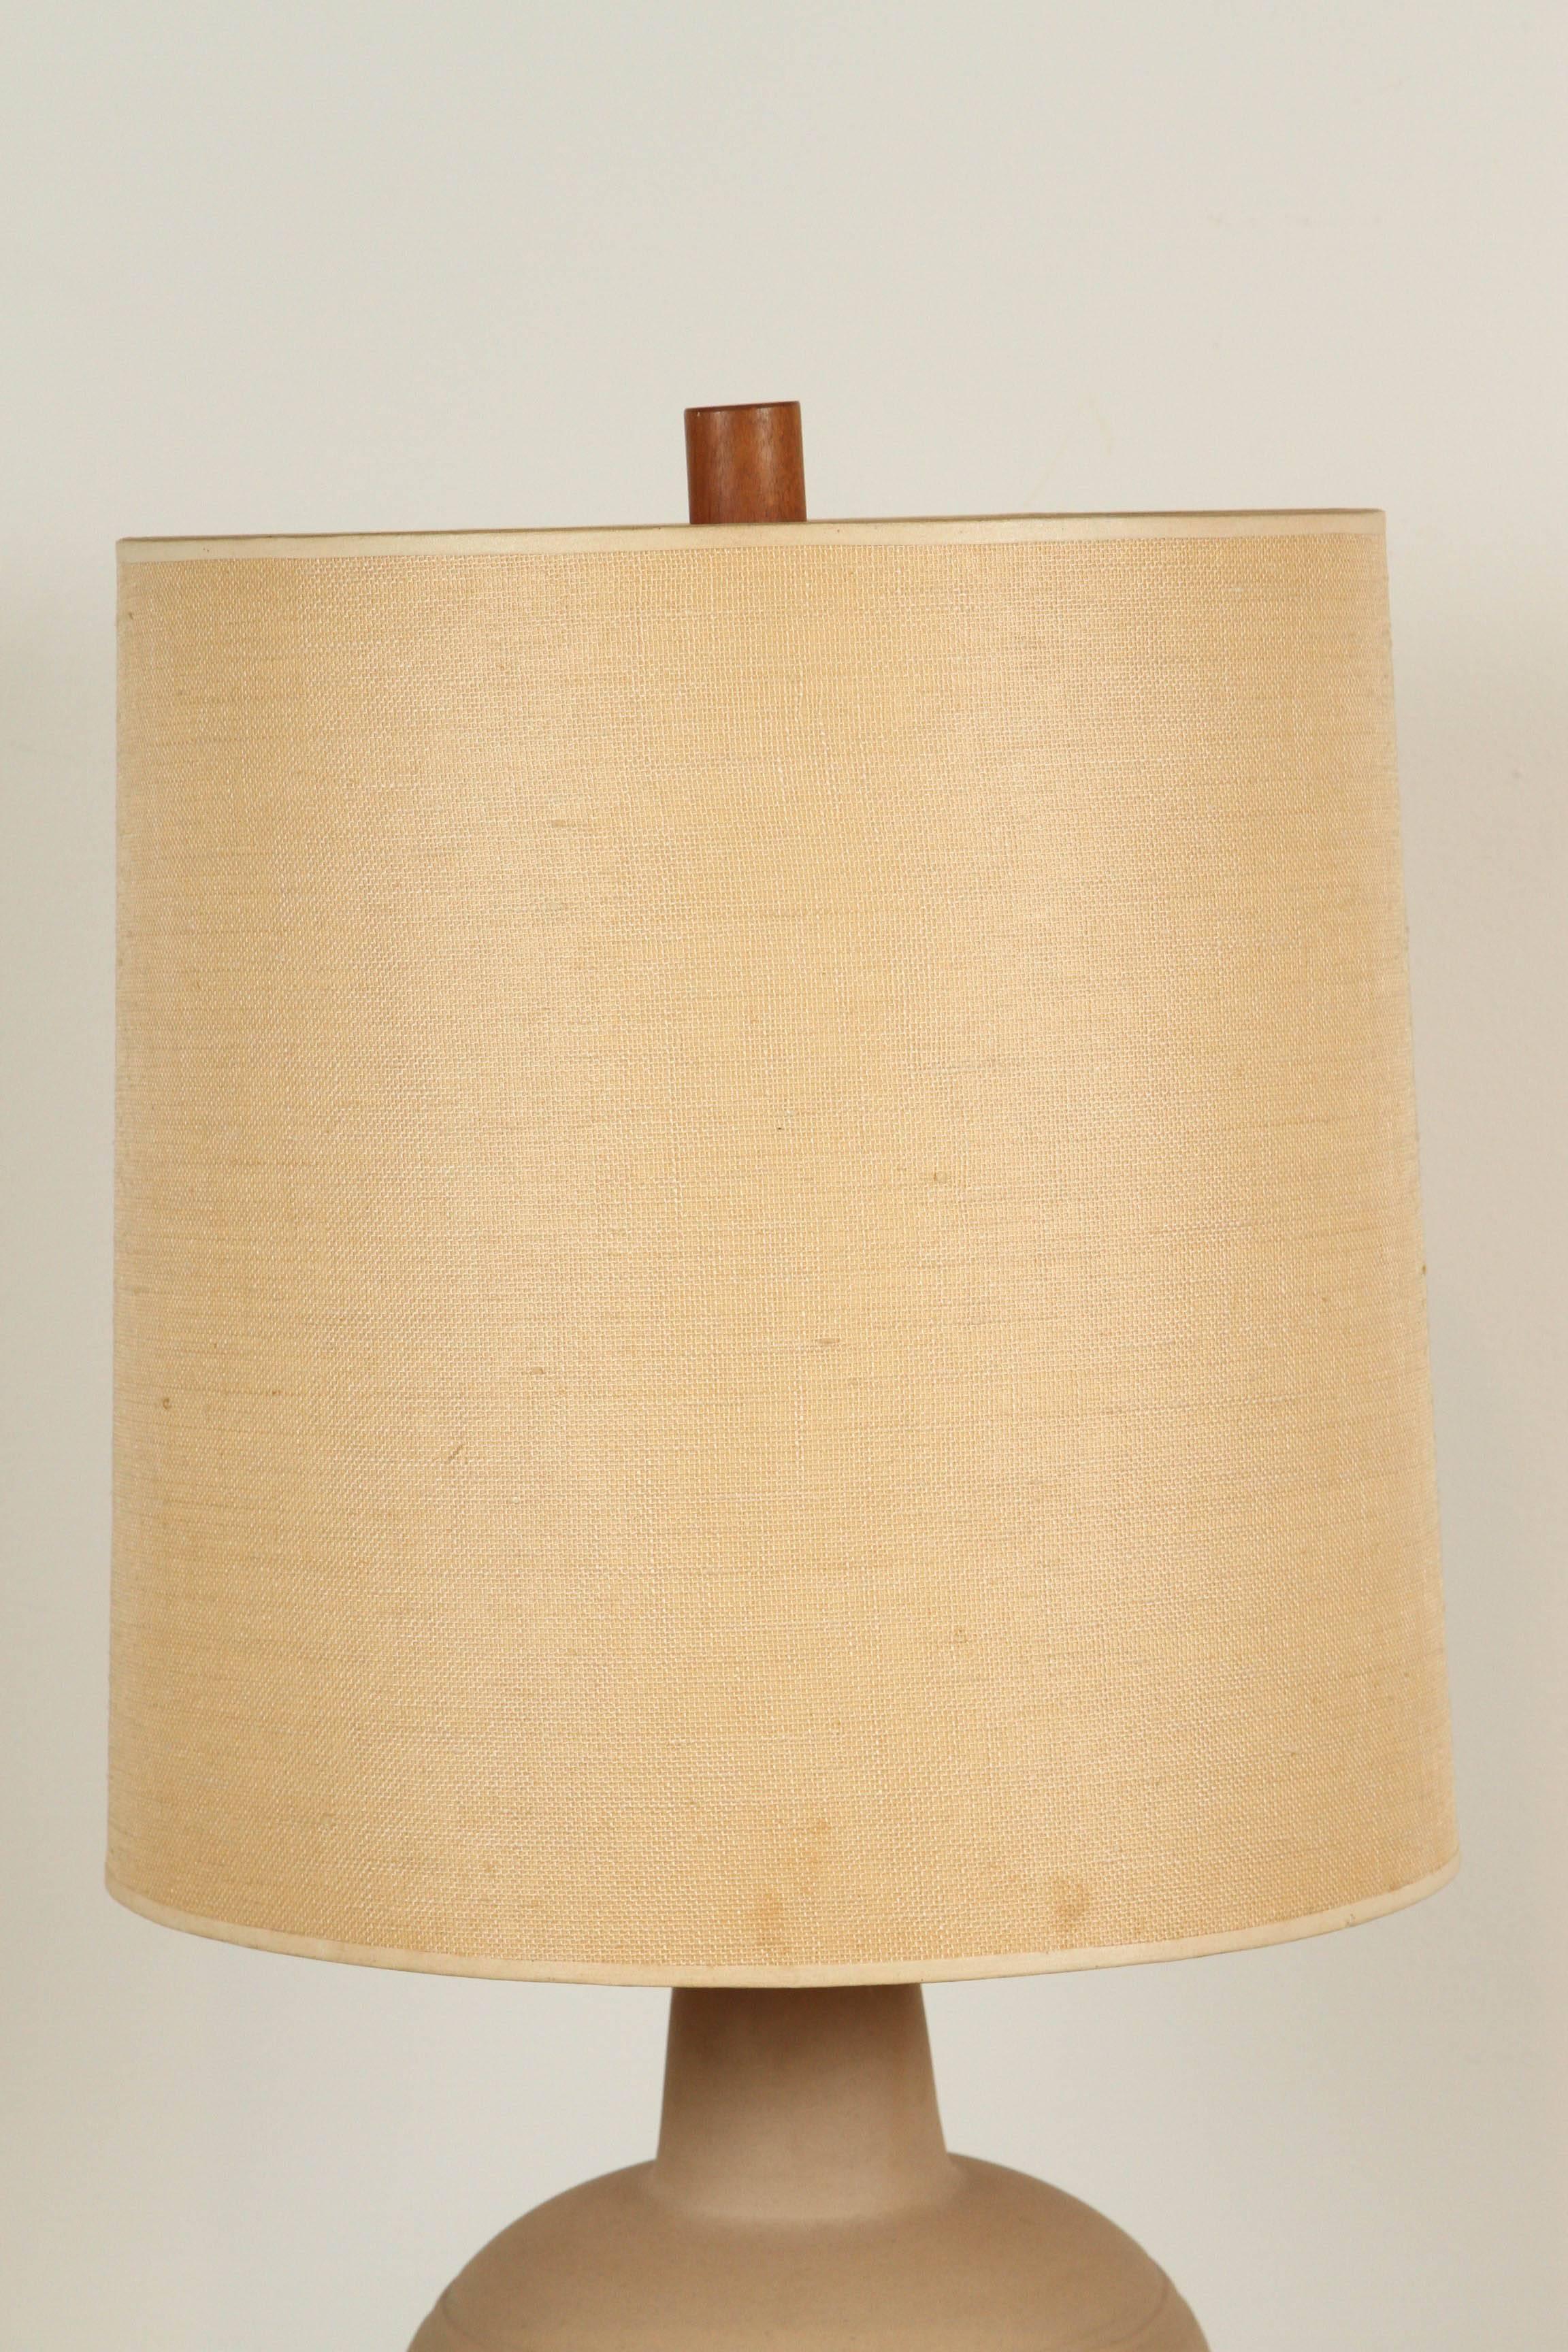 Martz ceramic table lamp.